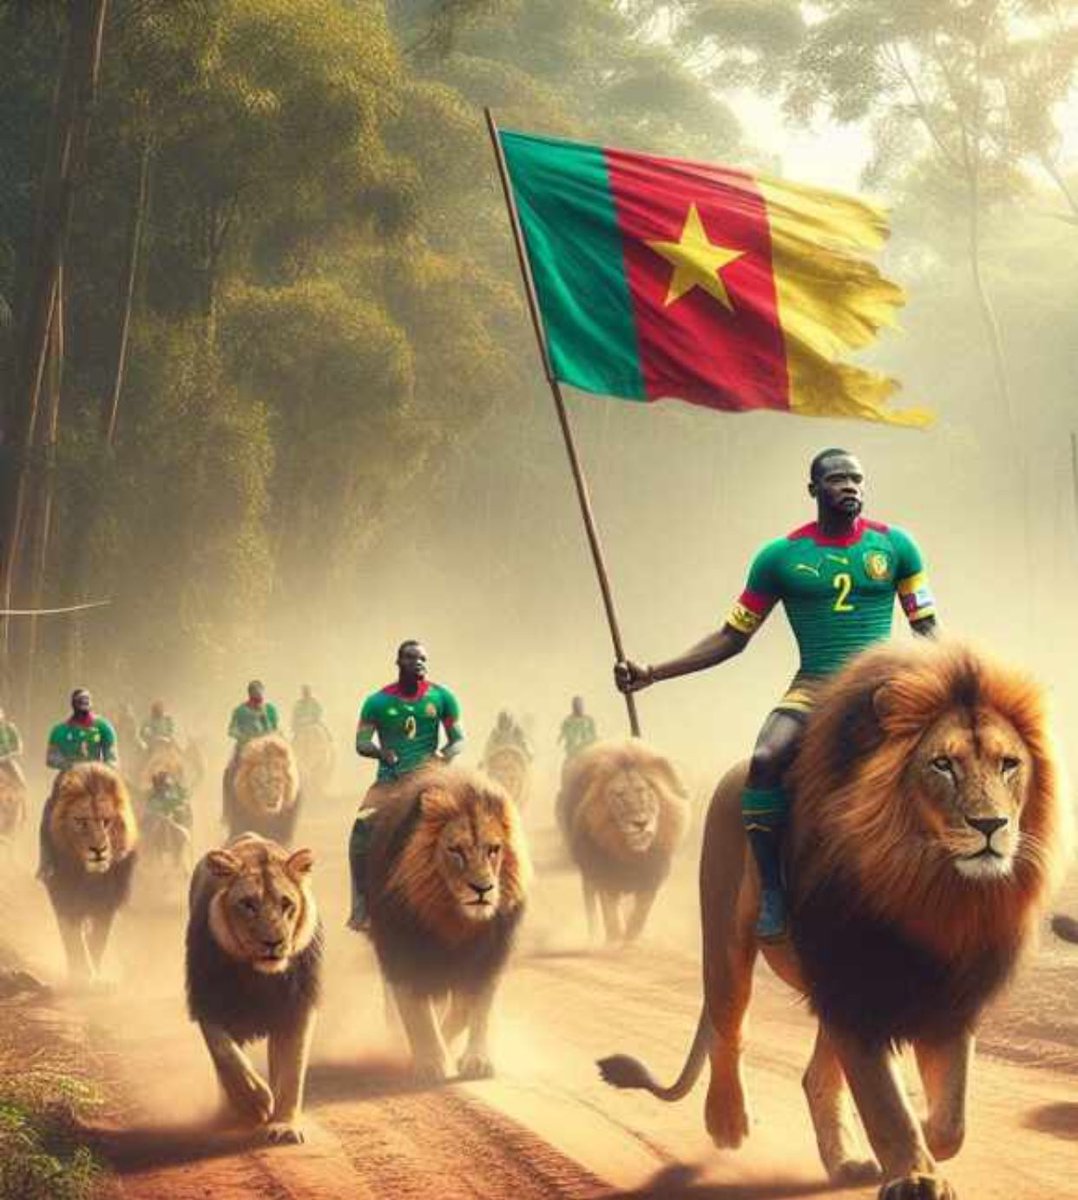 Les Gars je veux voir de la violence 🔥🇨🇲 bon match #Cameroun #CAN2023 #cotedivoire